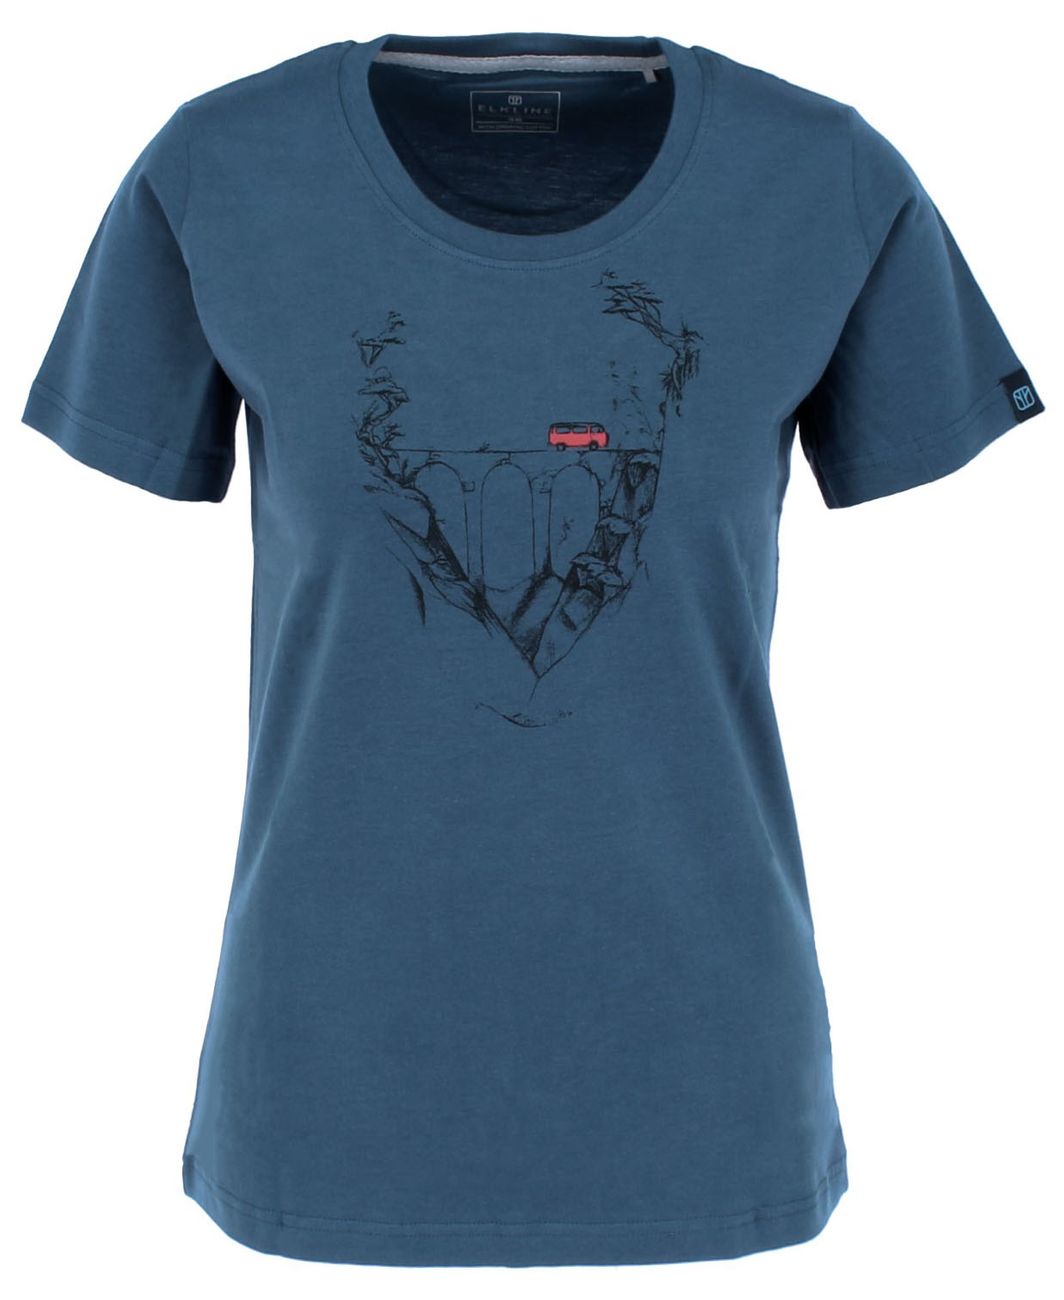 ELKLINE MYSTIC Damen Bulli T-Shirt aus Bio-Baumwolle und TENCEL Lyocell - Elkline - SAGATOO - 4051533613508